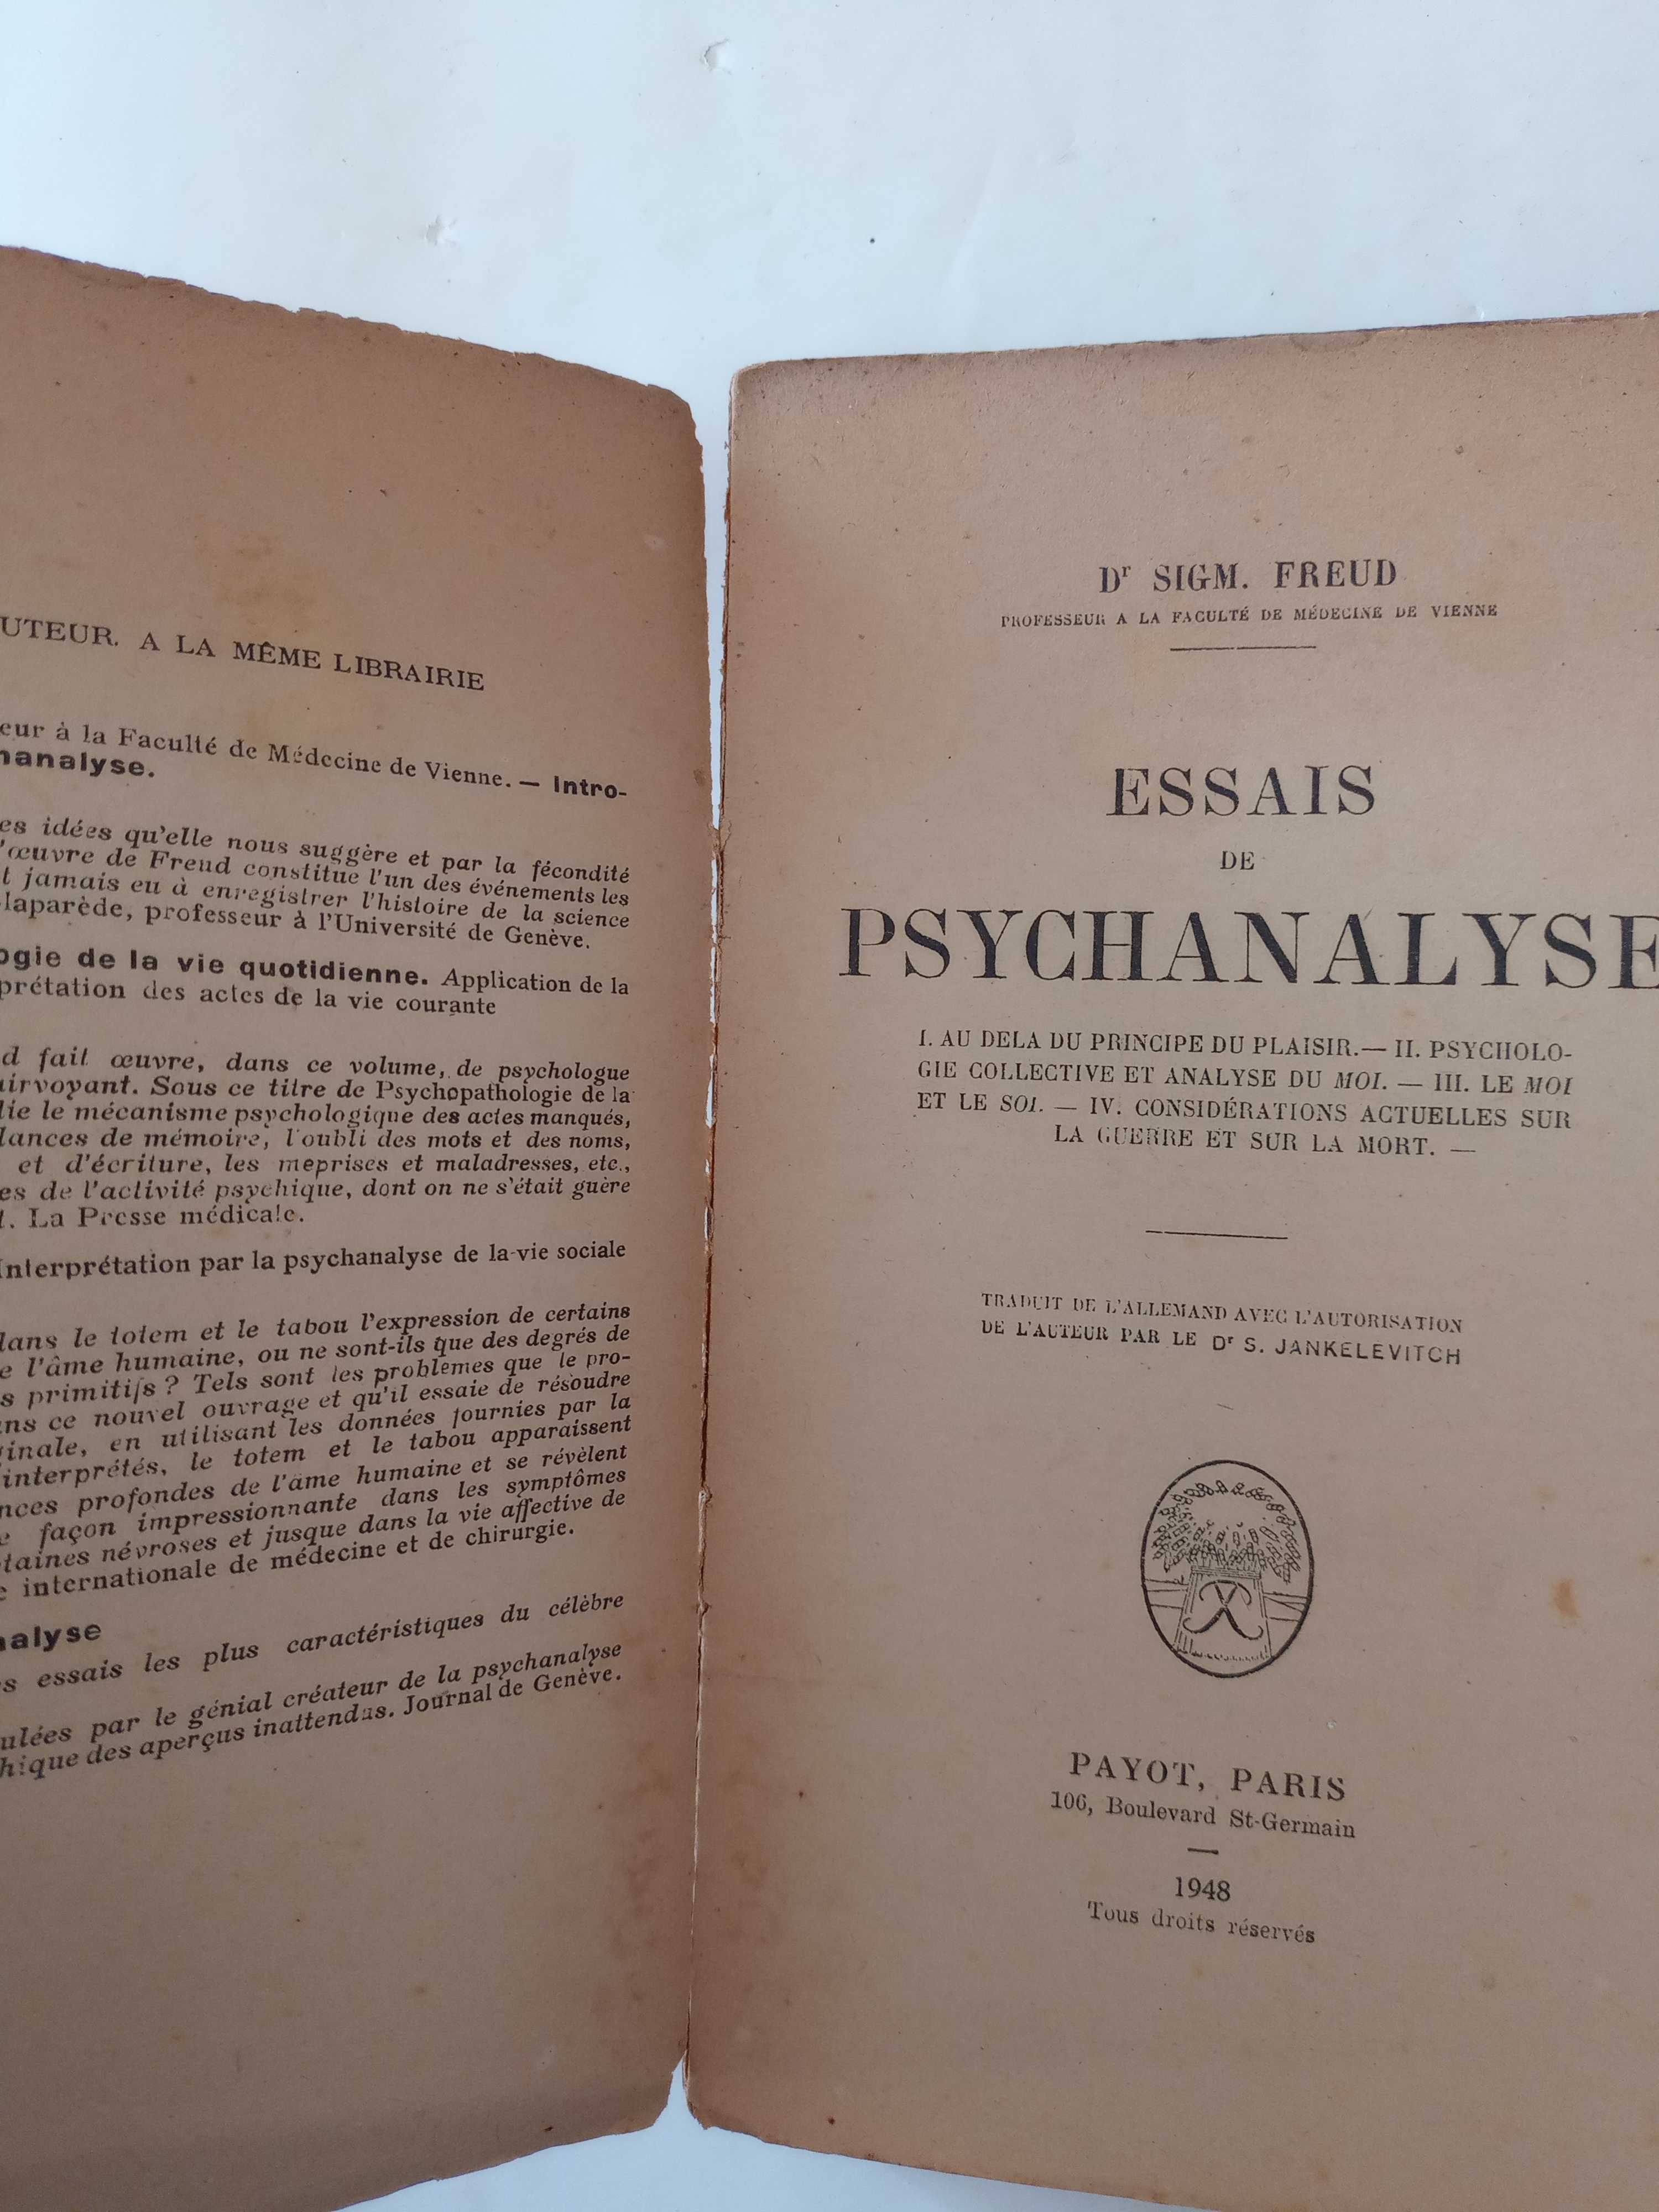 1948 Essais de Psychanalyse de D Sigmund Freud